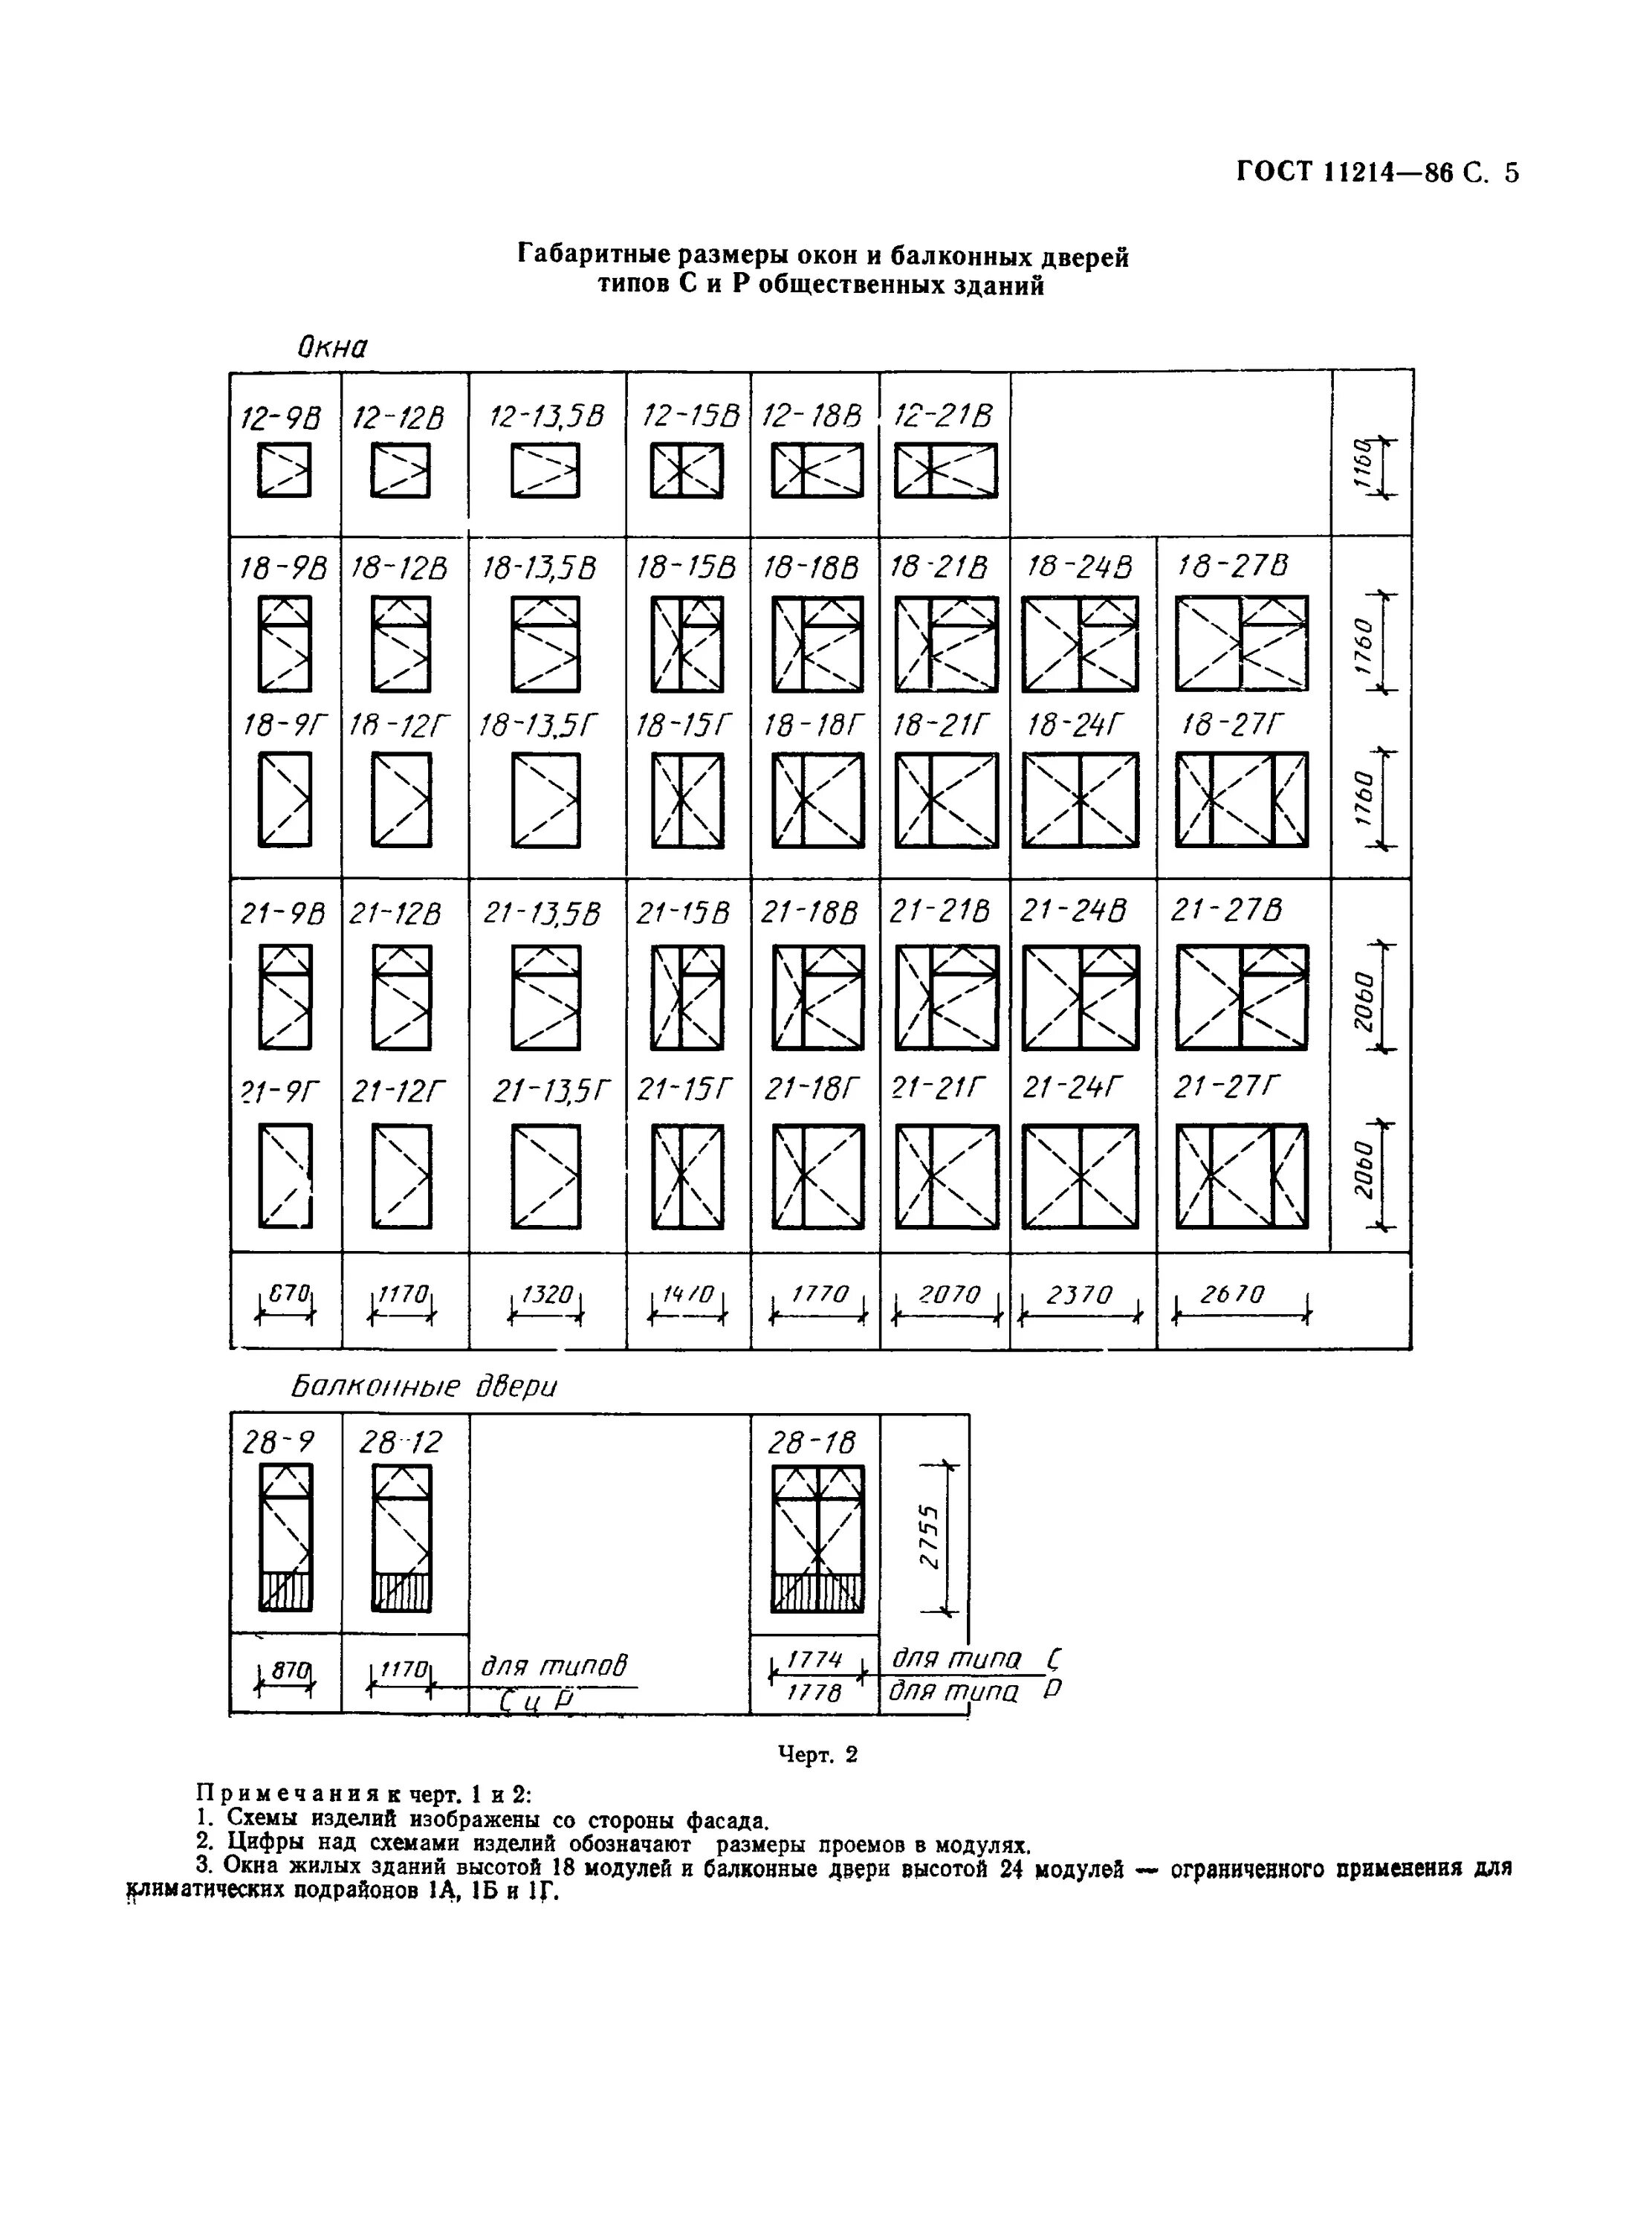 ГОСТ 11214-86 окна и балконные двери. ГОСТ двери деревянные внутренние для жилых и общественных зданий 2021. 5 ГОСТ 11214-86 окна и балконные двери. ГОСТ 11214-2003 балконные двери. Гост балконные двери